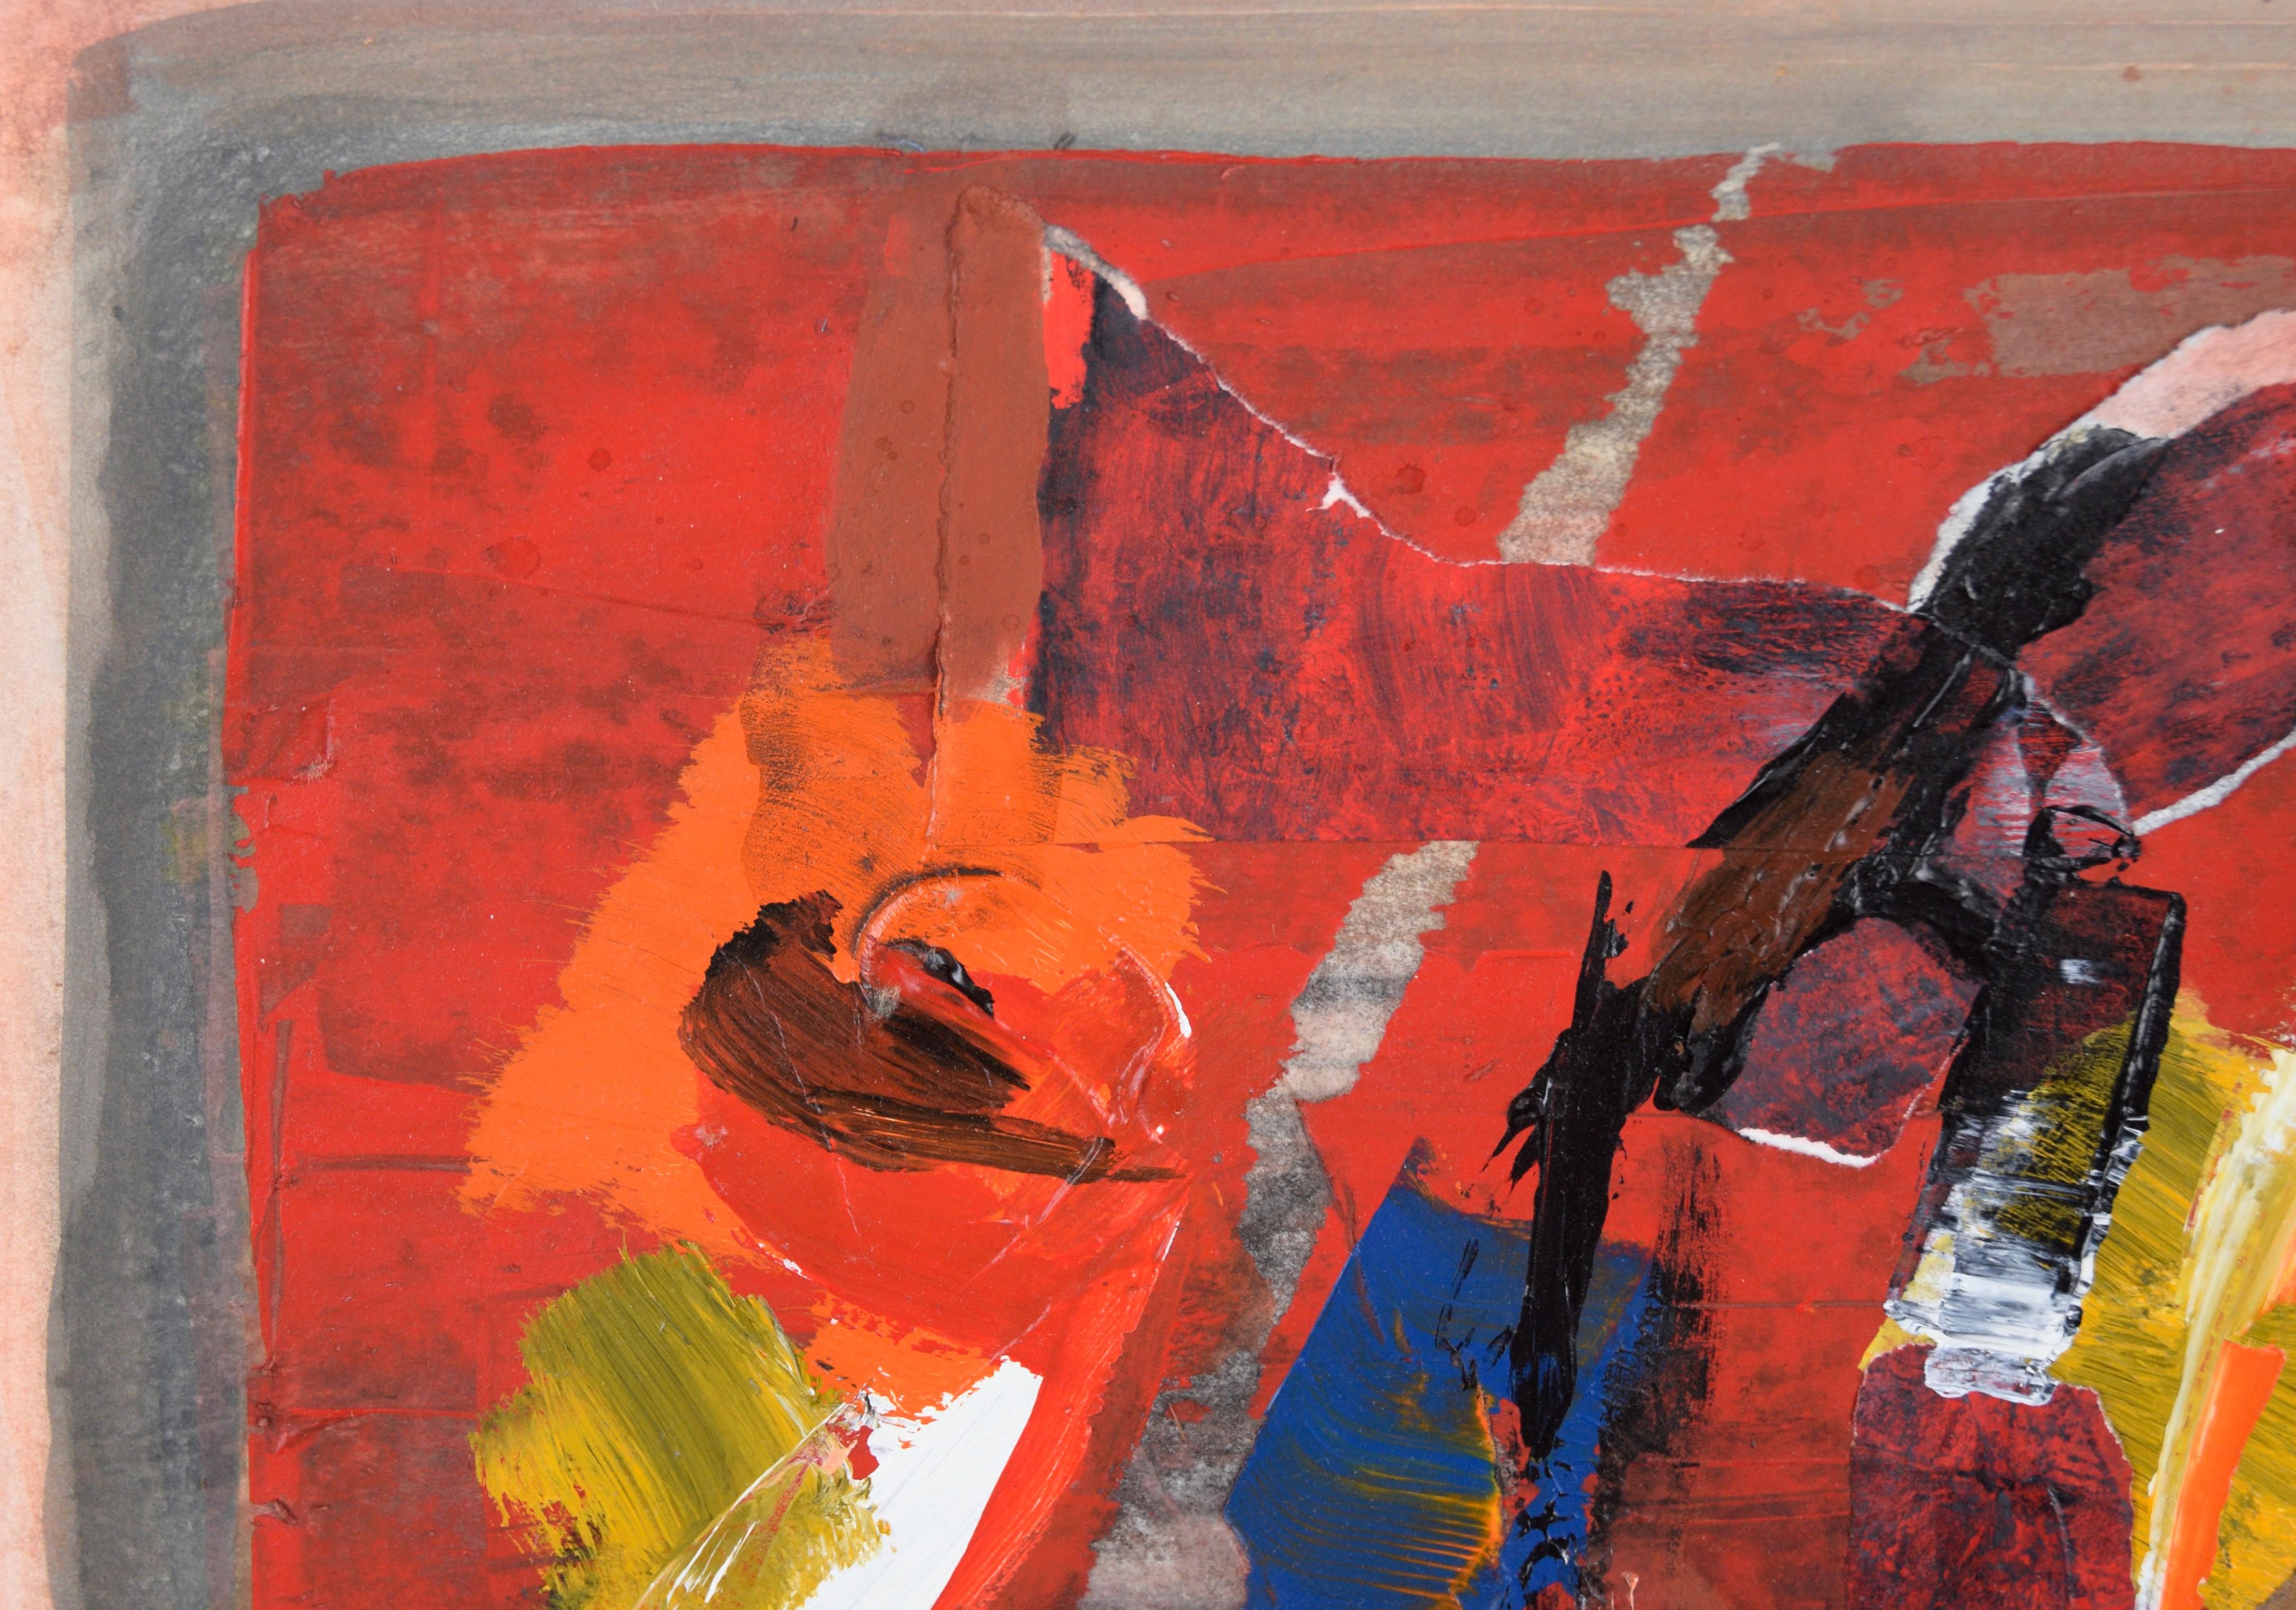 Abstrakt-expressionistische Collage aus Acryl auf Papier – Painting von Ricardo de Silva